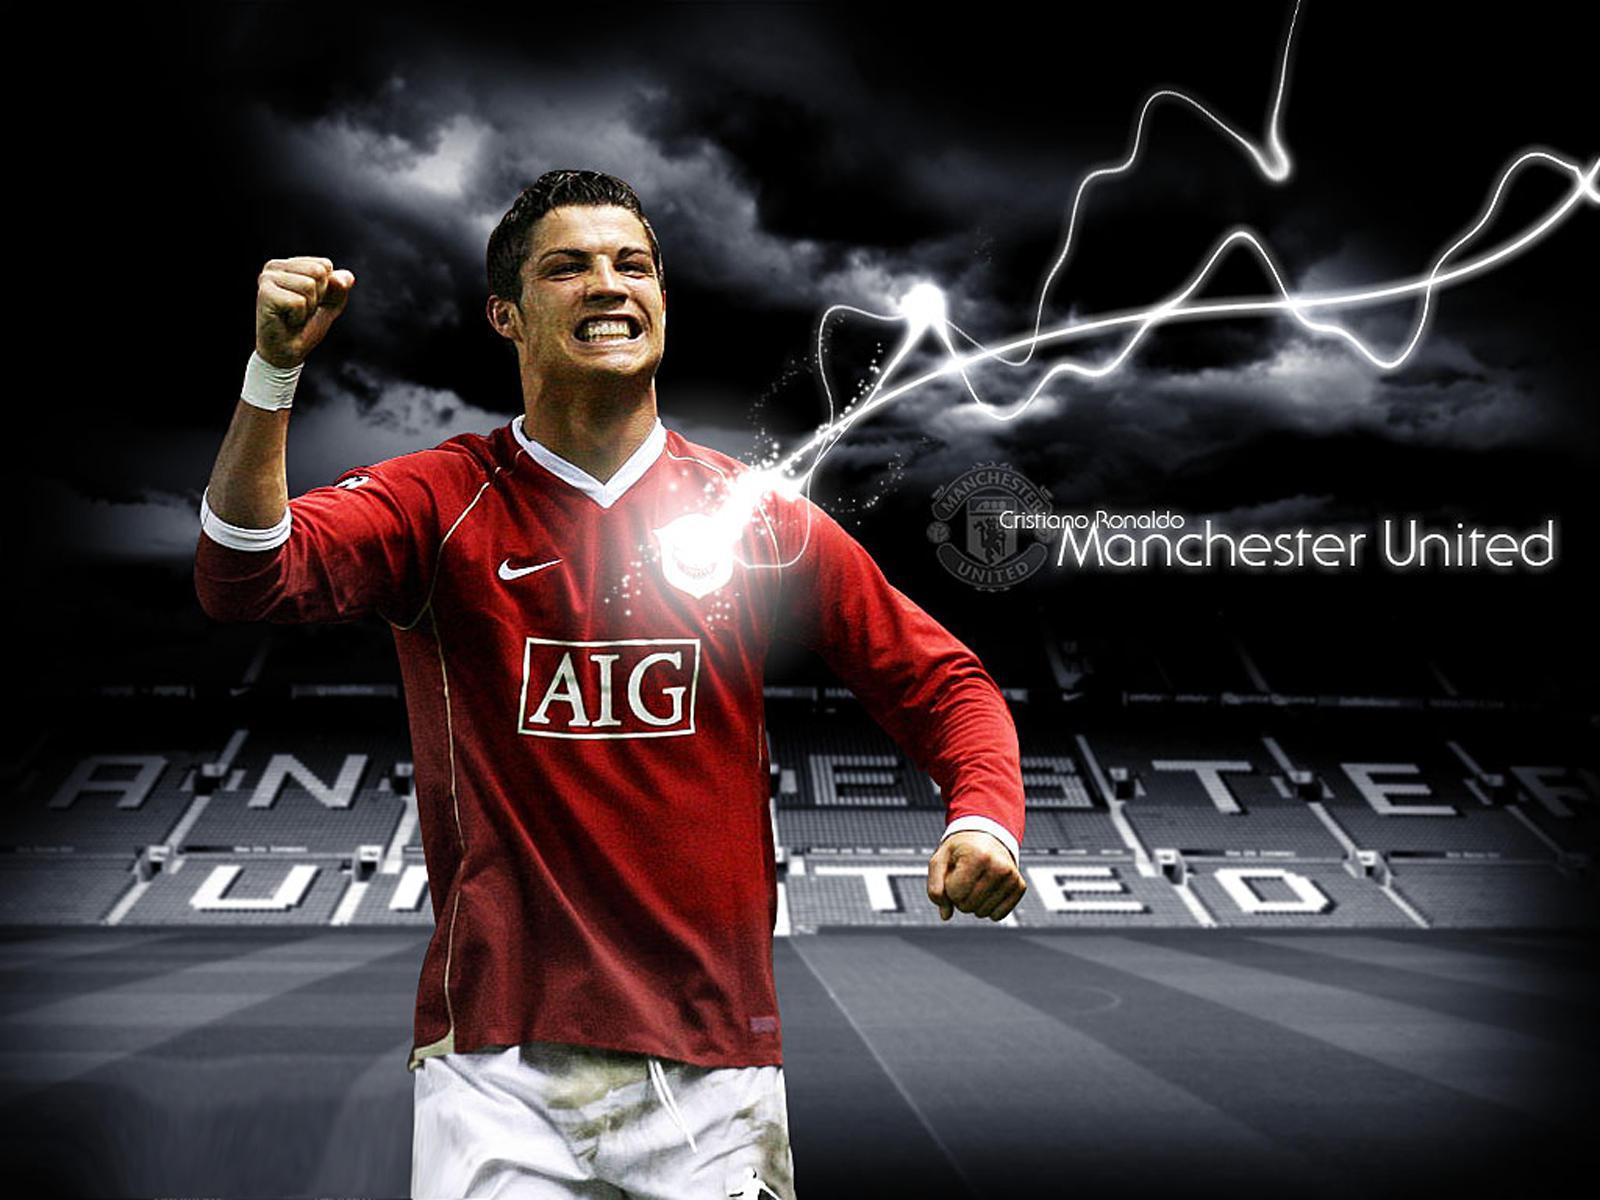 Cristiano Ronaldo Manchester United Wallpapers - Top Free Cristiano